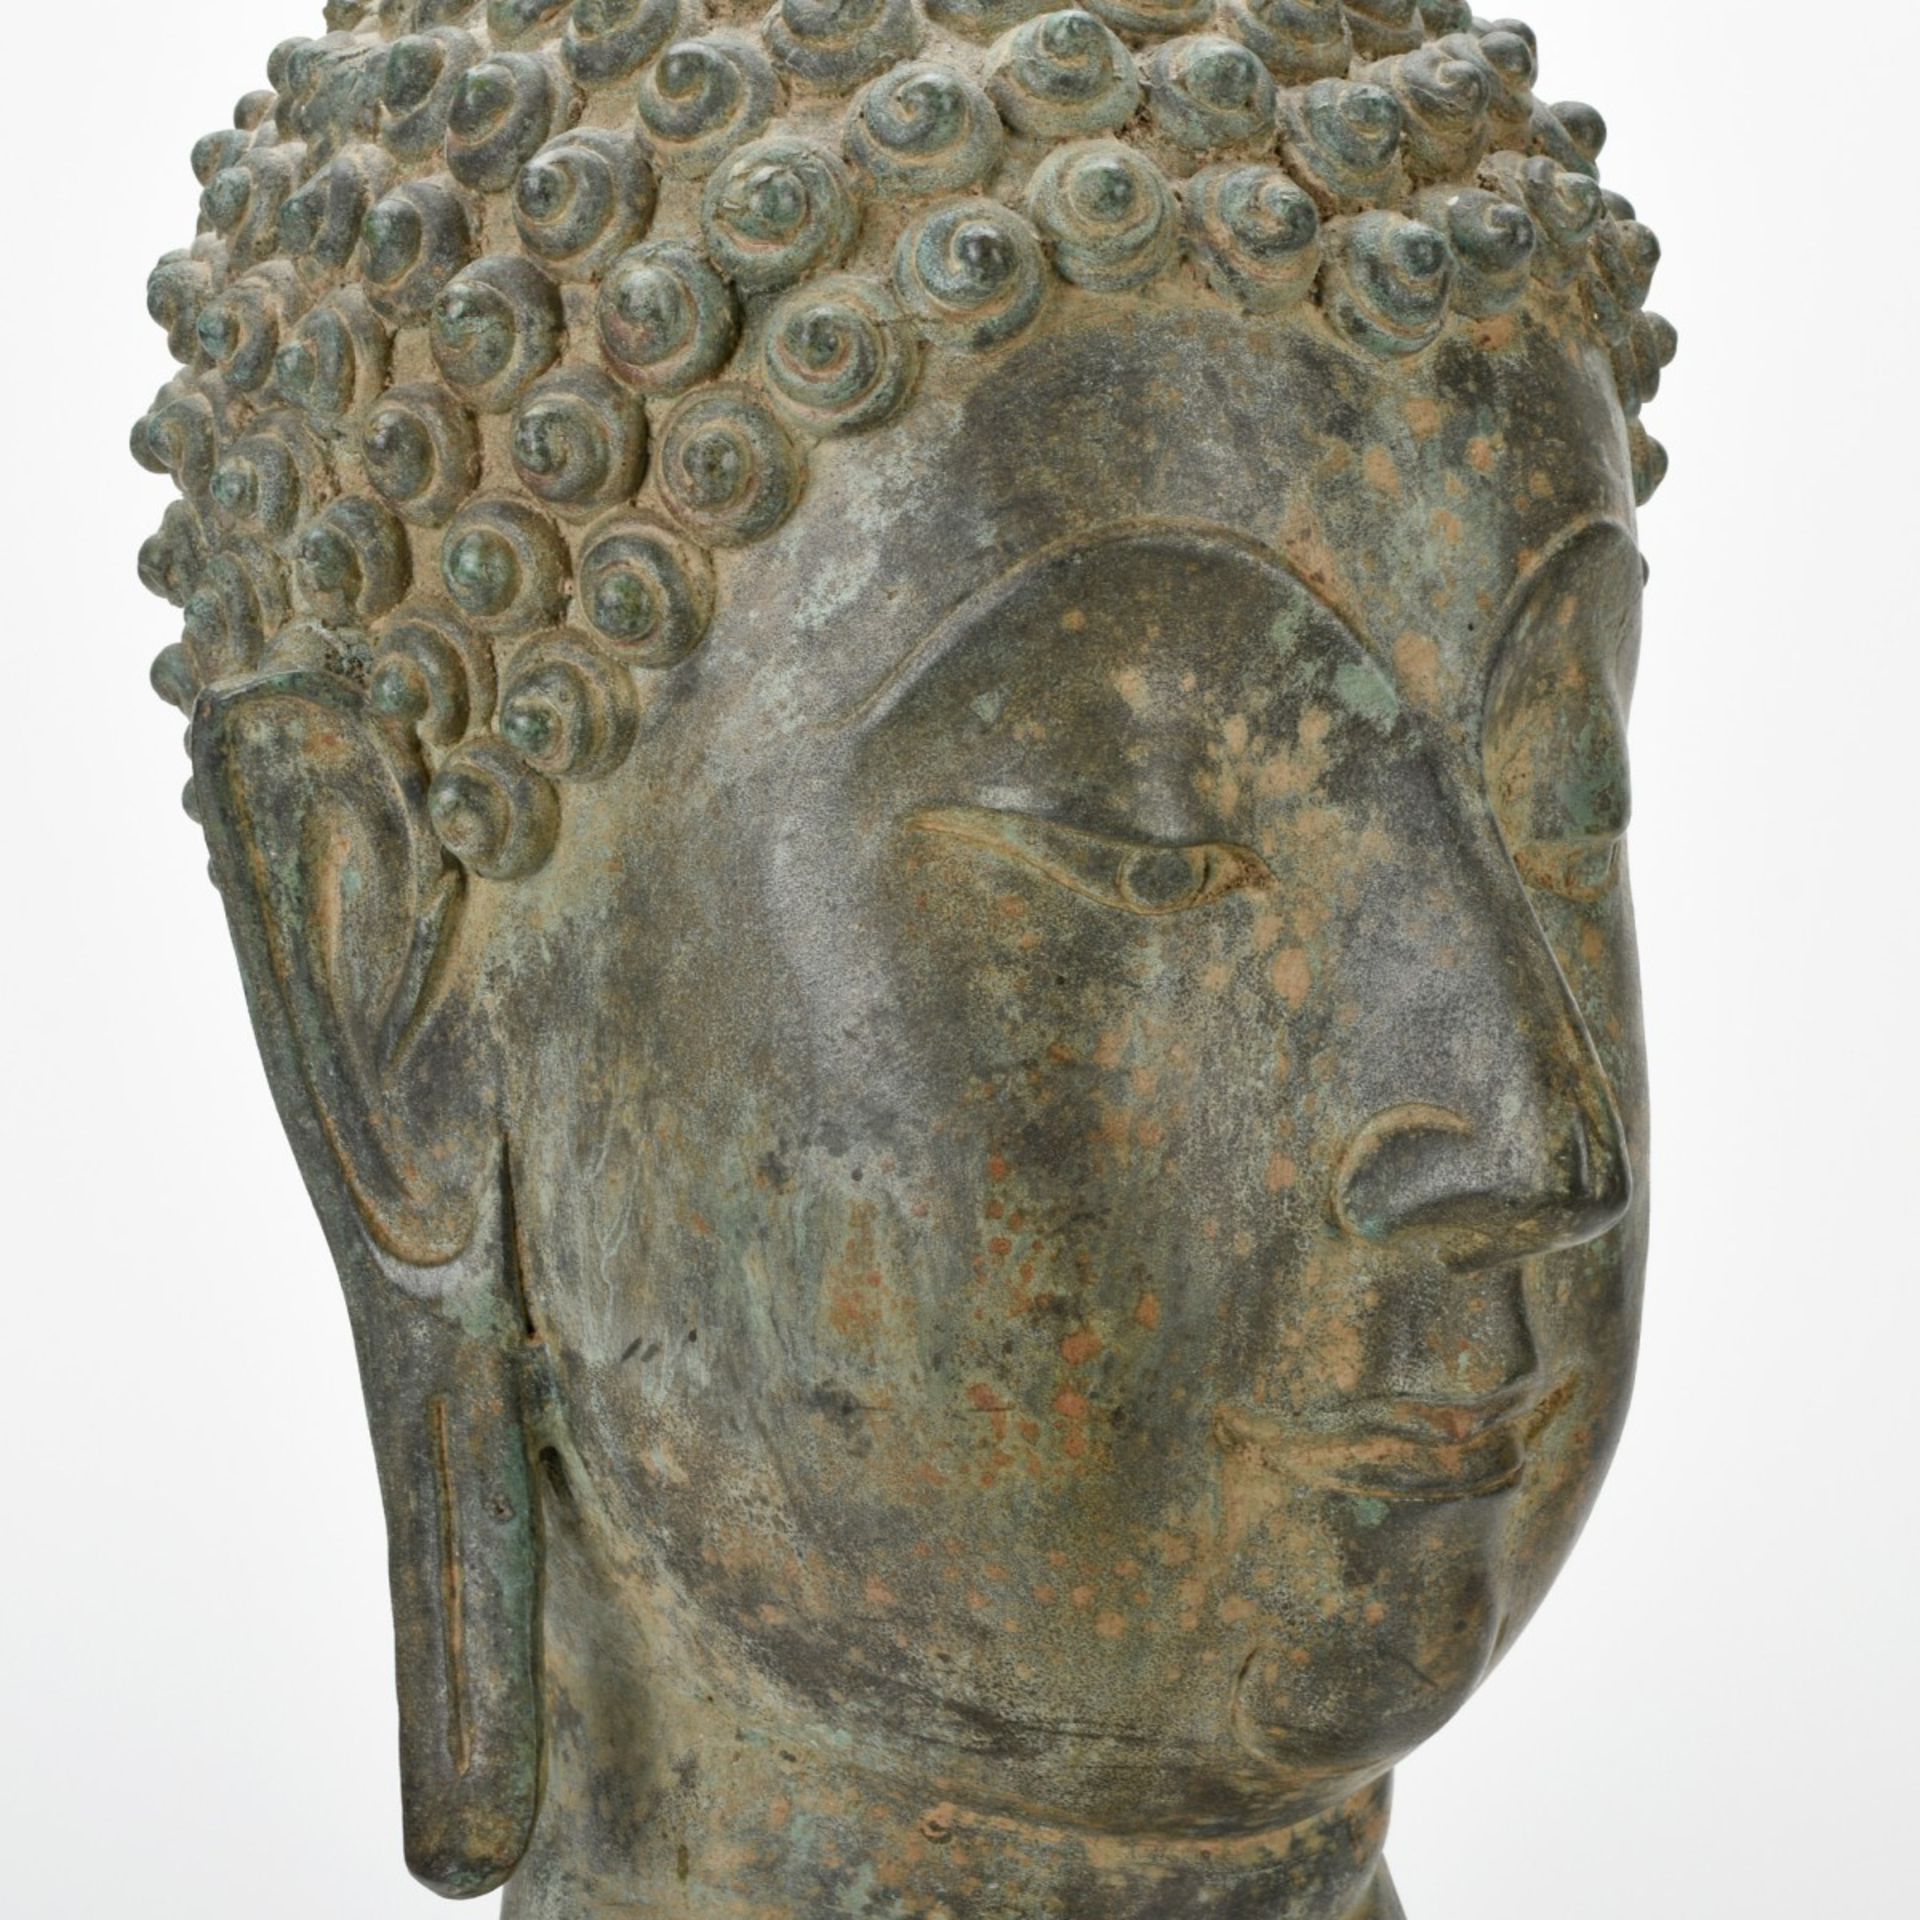 Buddhahaupt - Image 4 of 6